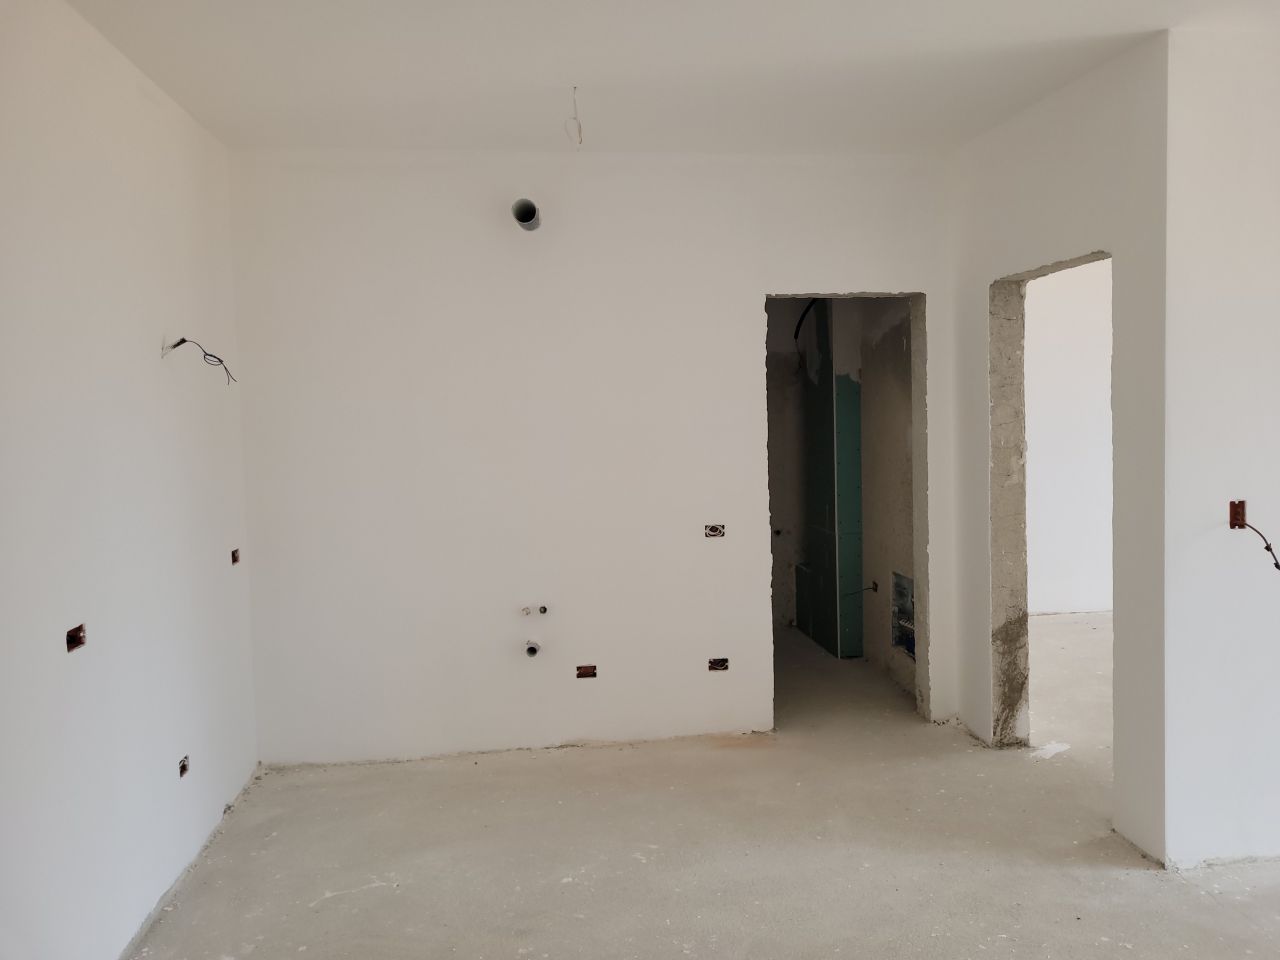 Wohnung Zum Verkauf In Golem Durres Albanien, In Einer Ruhigen Gegend, Nahe Dem Strand